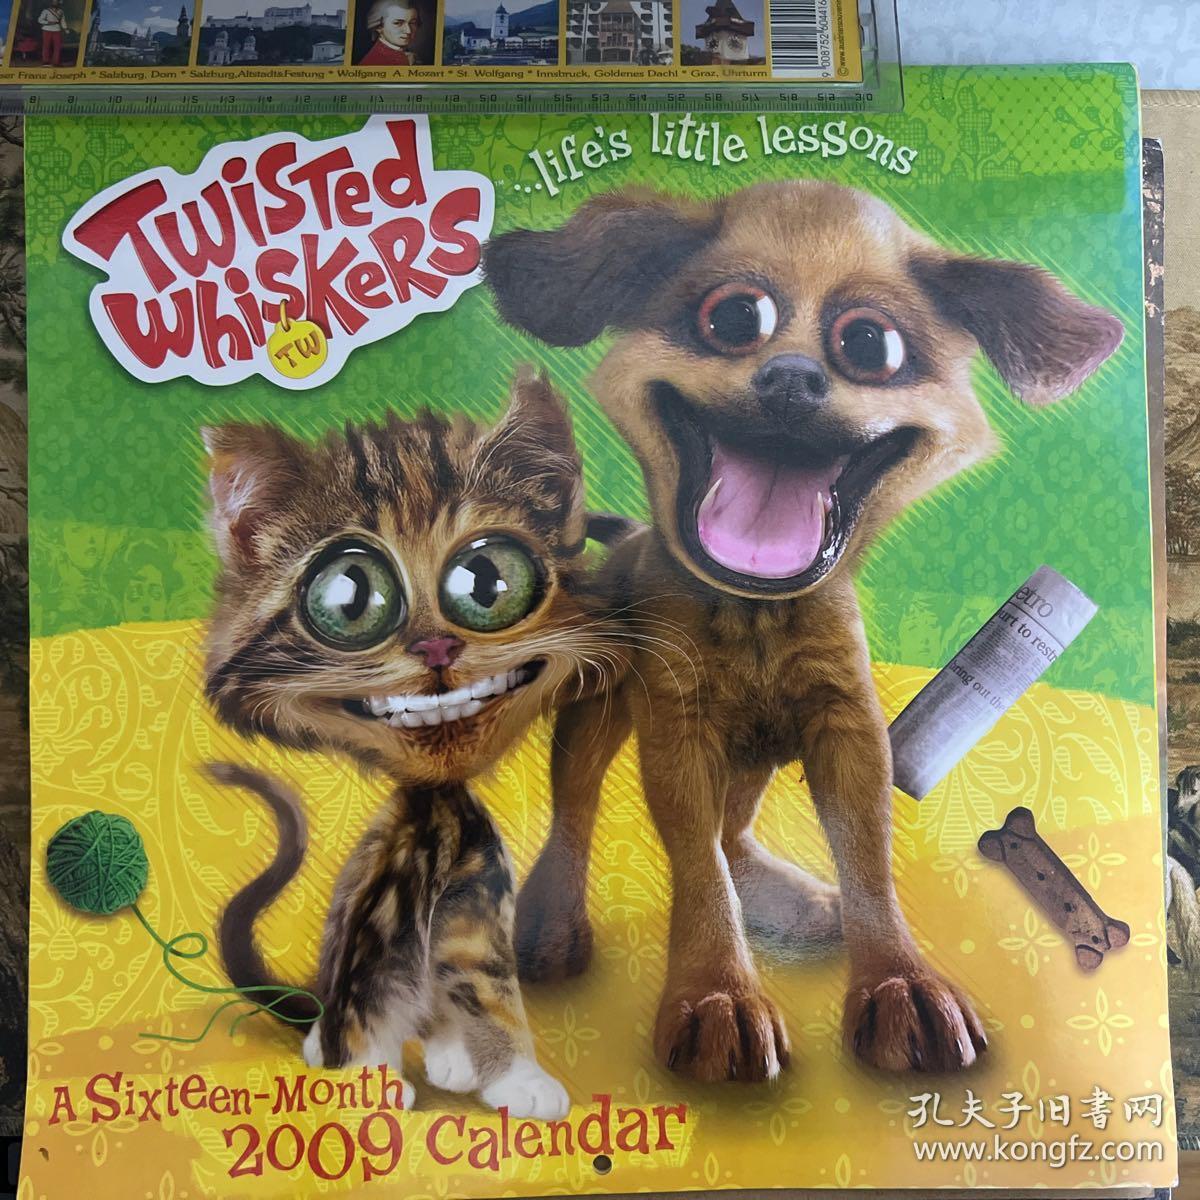 挂历 扭曲猫狗Twisted Whiskers ...Life's Little Lessons 2009 Calendar